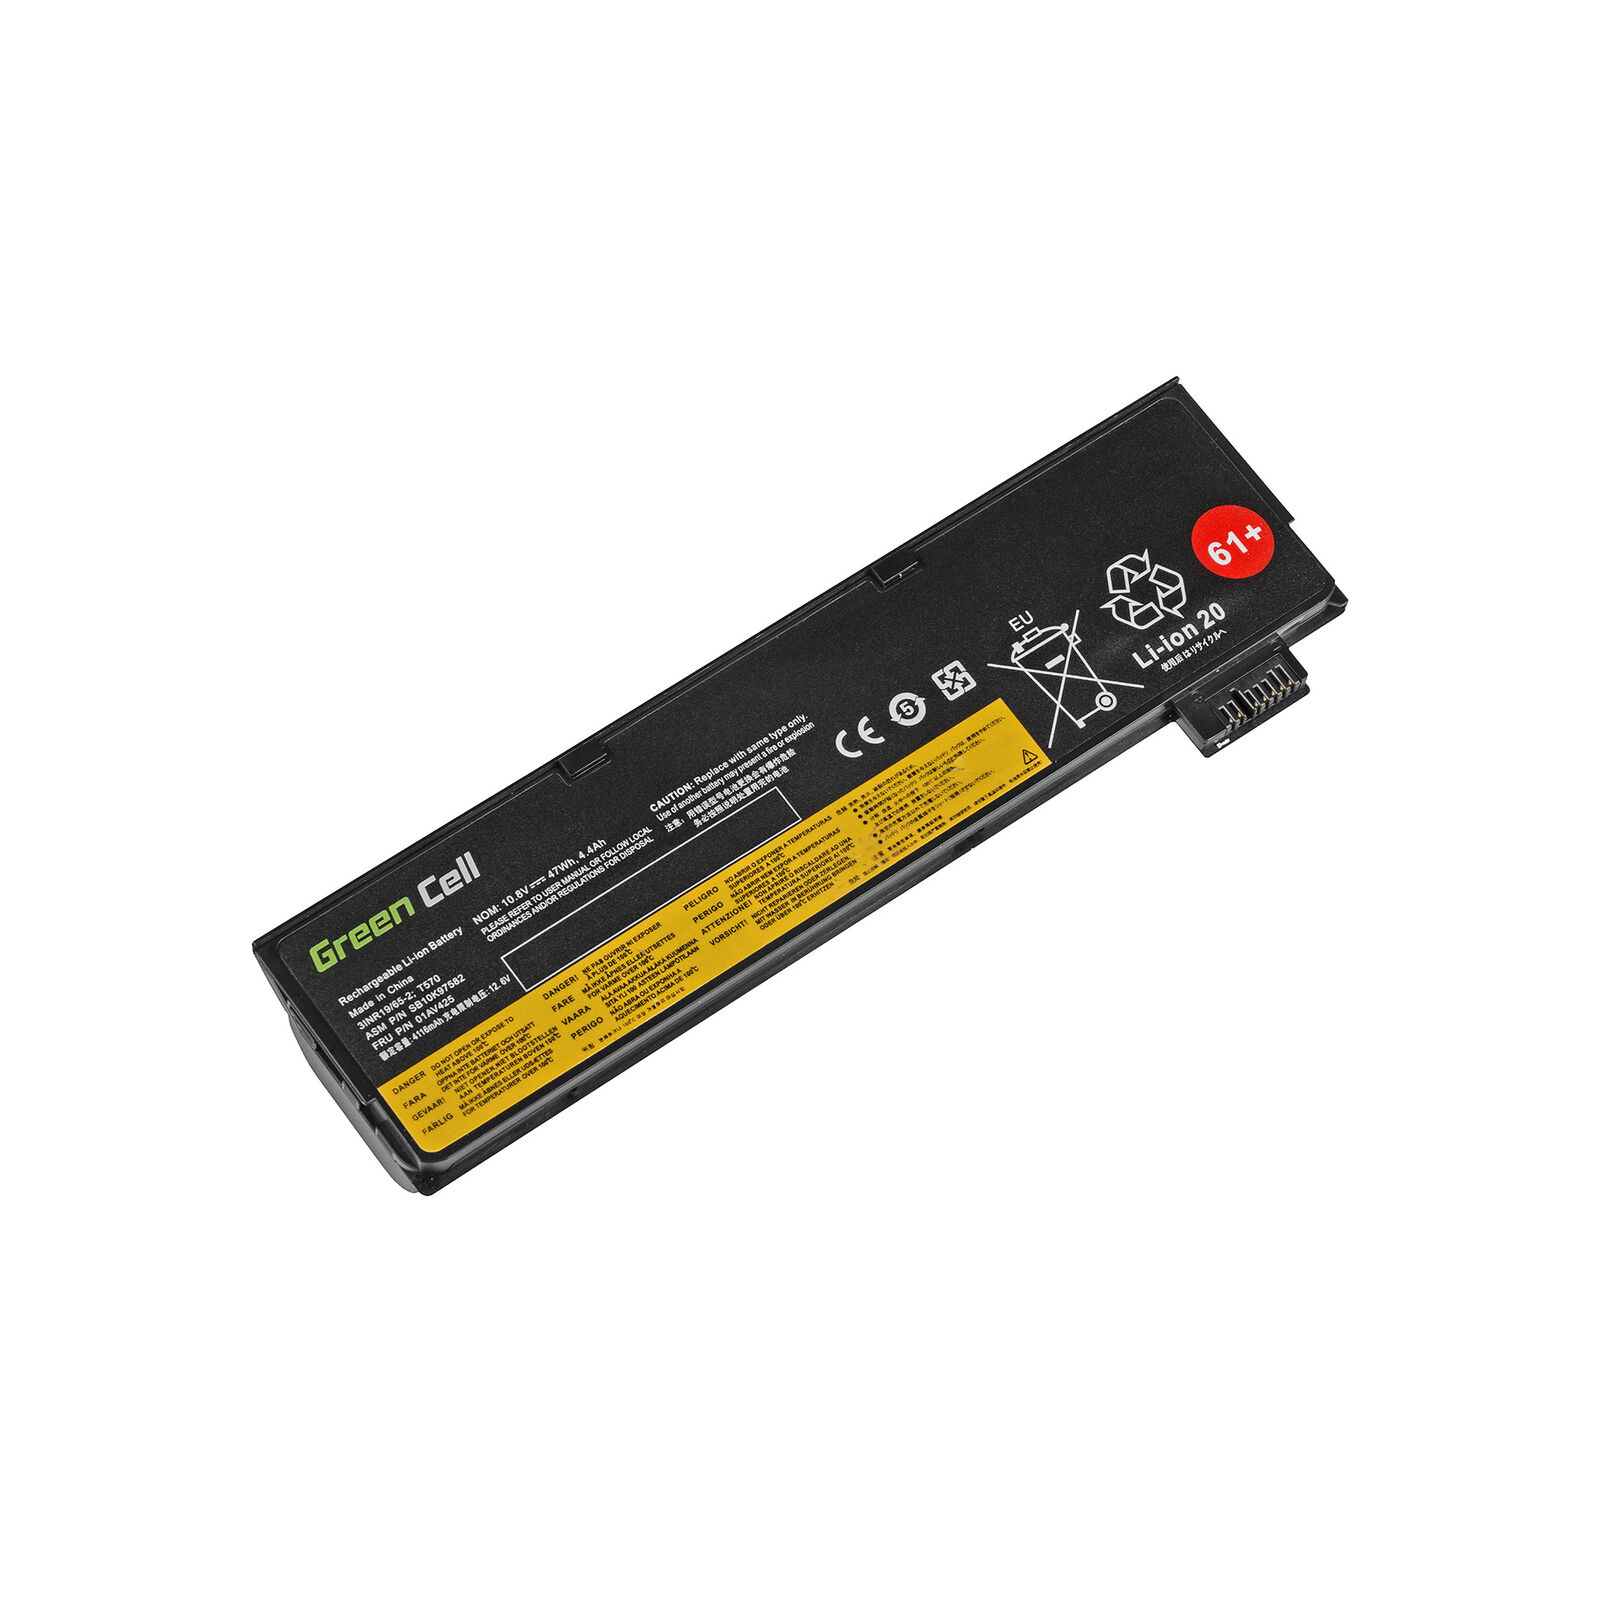 Batterie pour 01AV490 01AV491 01AV492 4X50M08810 4X50M08812(compatible)